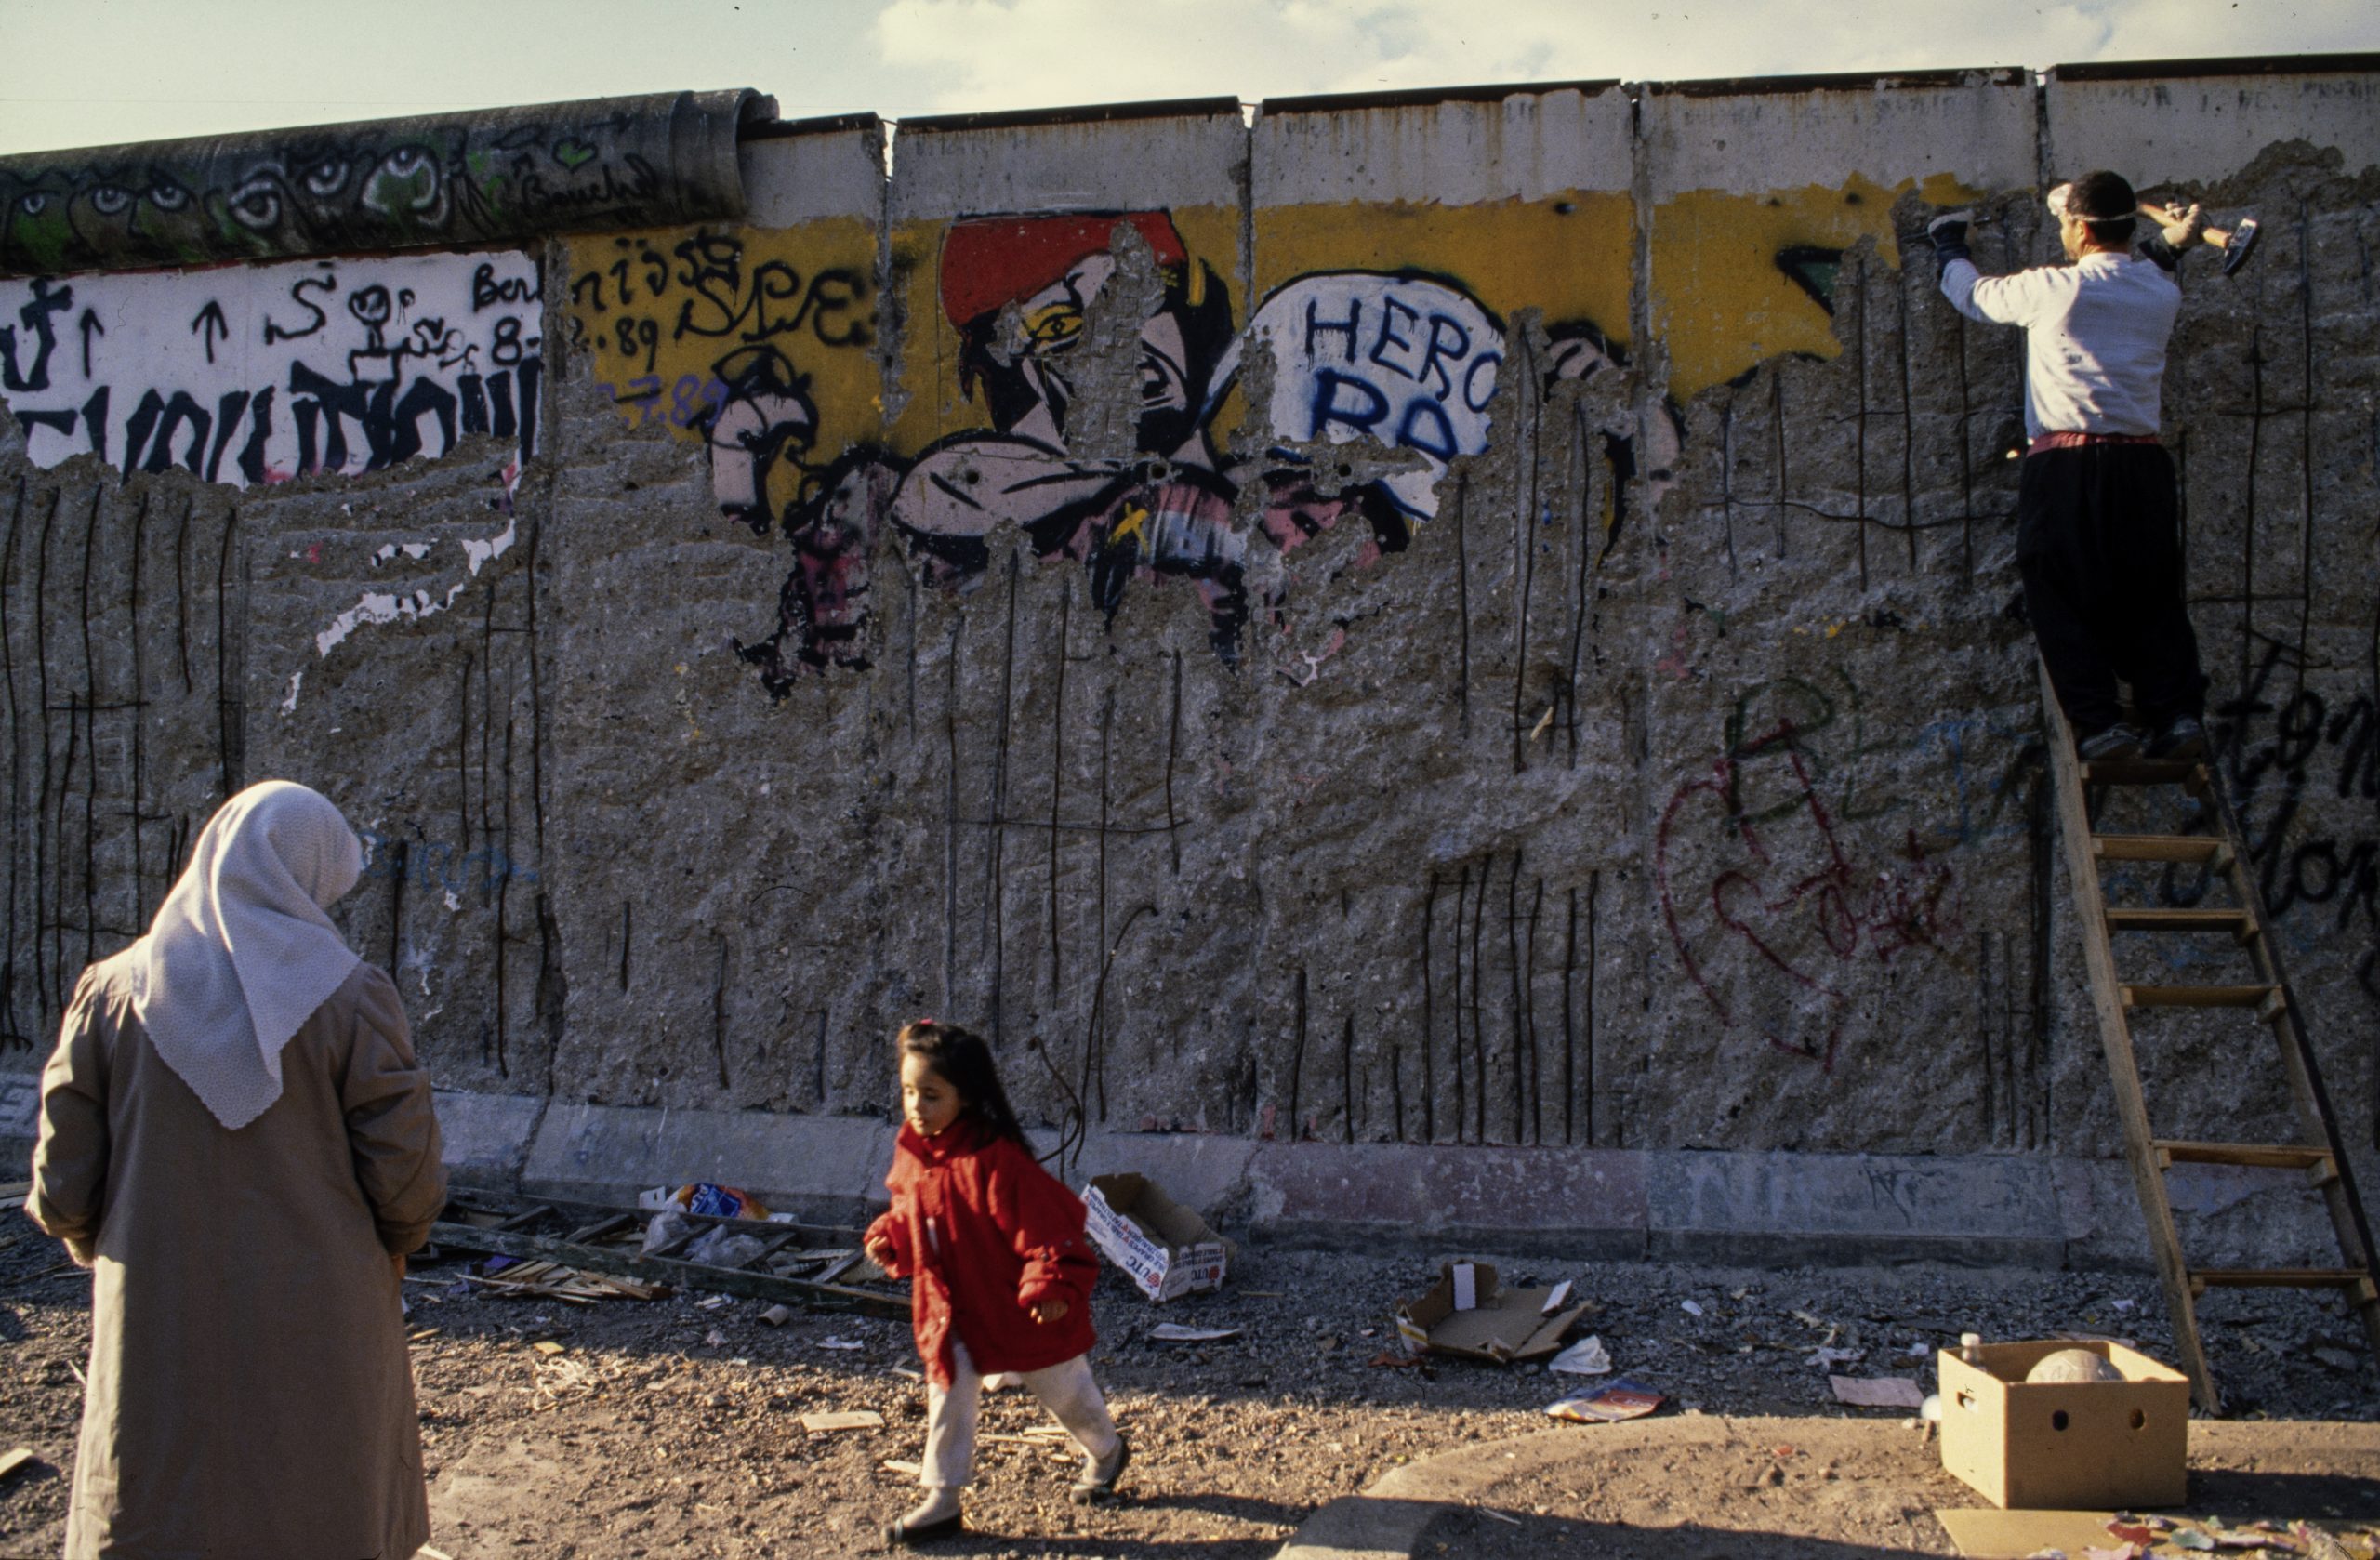 Die Mauer steht für die deutsche Teilung und den Kalten Krieg. Menschen schlugen Mauerteile als Erinnerung aus der Mauer. Diese Menschen heißen "Mauerspechte". Sie haben die Mauerstücke behalten oder verkauft. Foto um 1990.